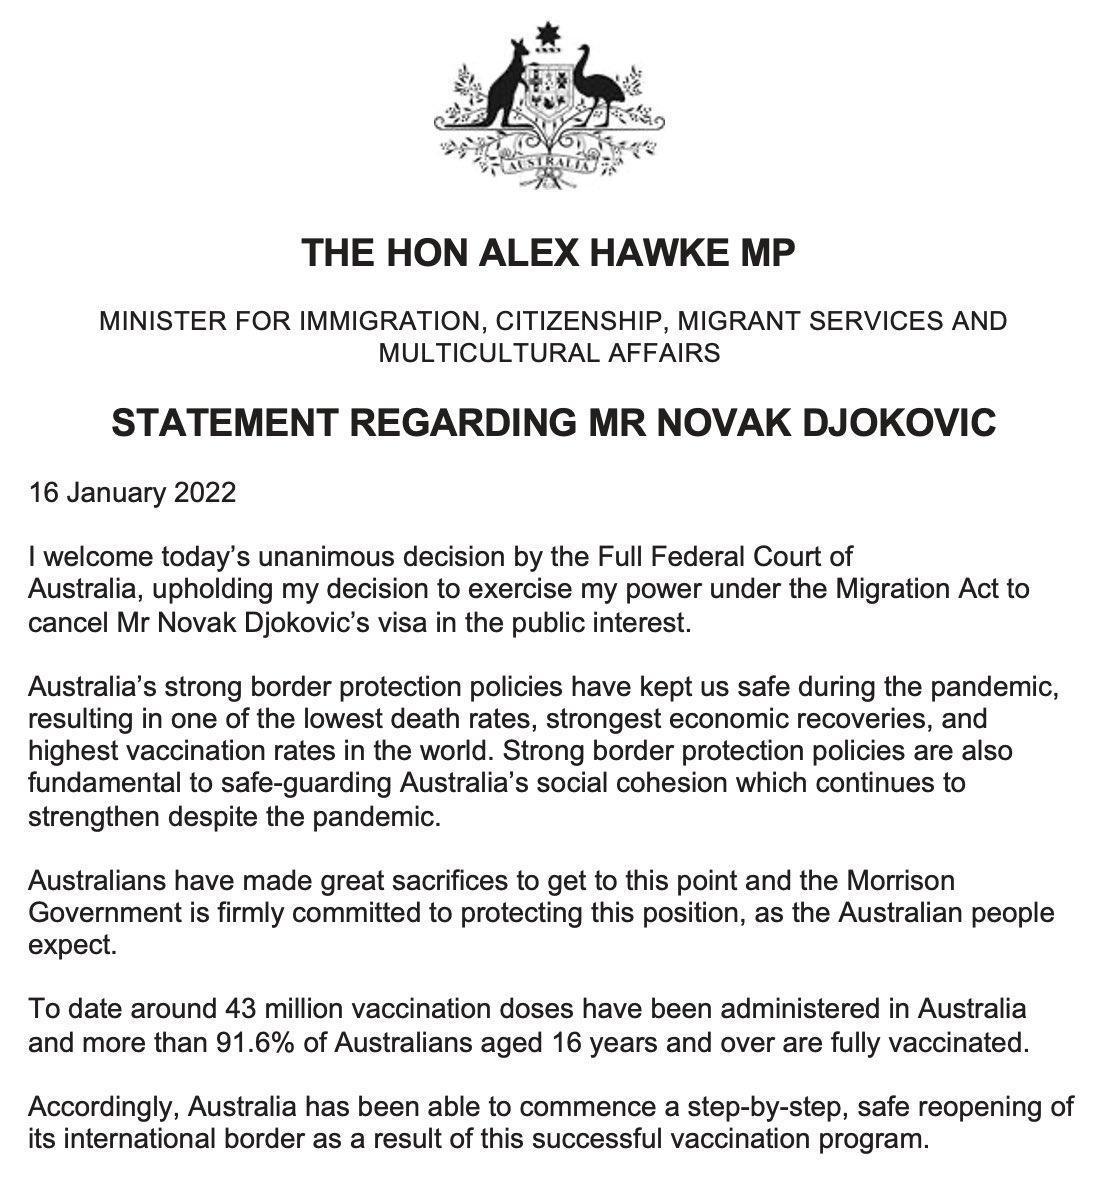 Avustralya Göç Bakanı: Djokovicin ülkeden ayrıldığını doğrulayabilirim